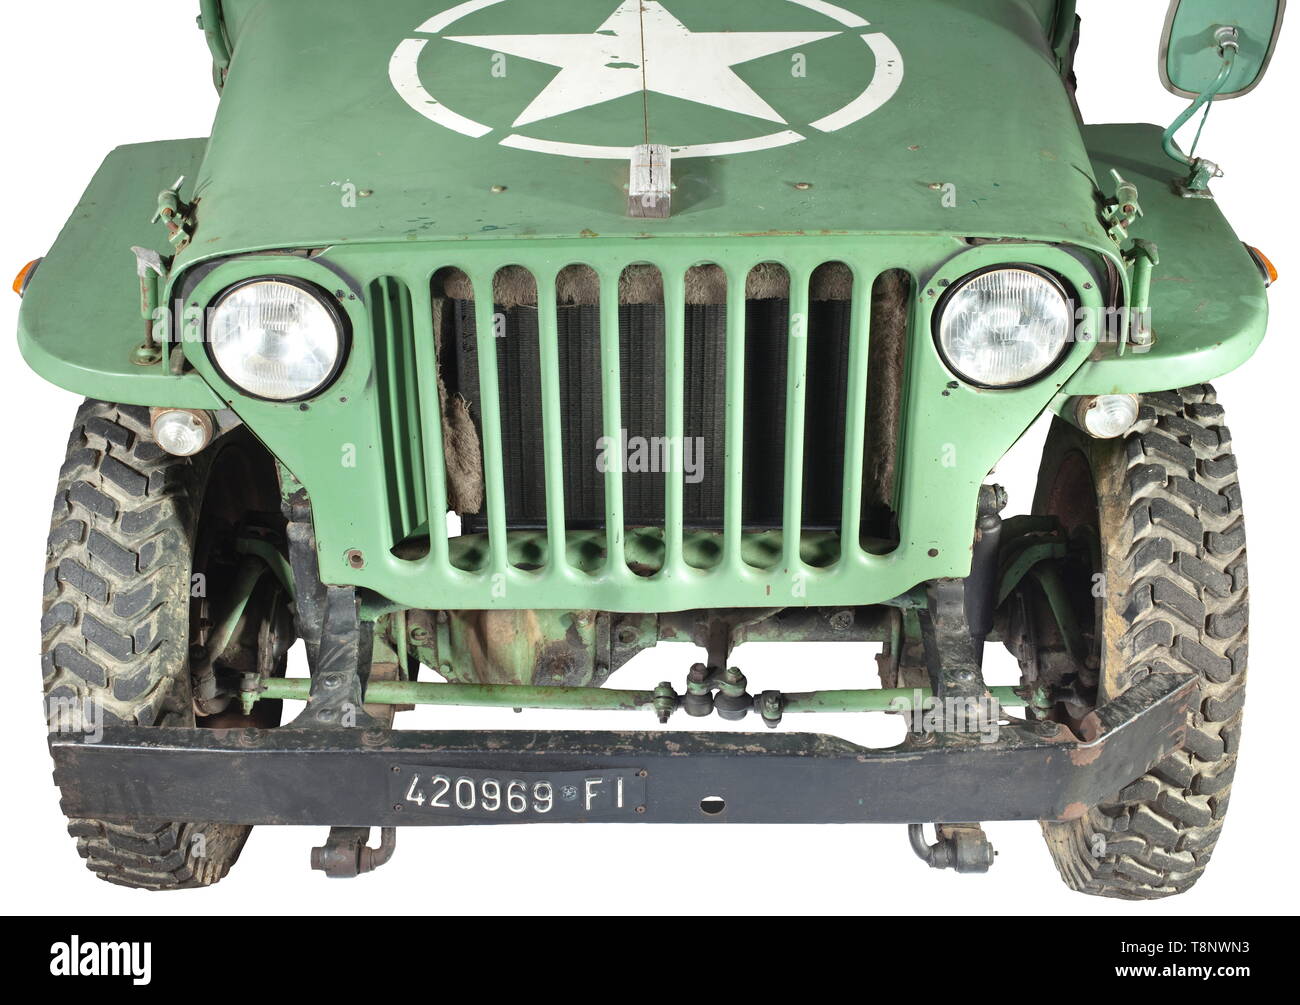 Une Jeep Willys MB Estimation Année de production : 1945. Prêt à l'emploi.  Numéro de châssis couverts par la caisse. Châssis Original : châssis  principal pas corrodés, soudé ou tordu, unité d'origine (